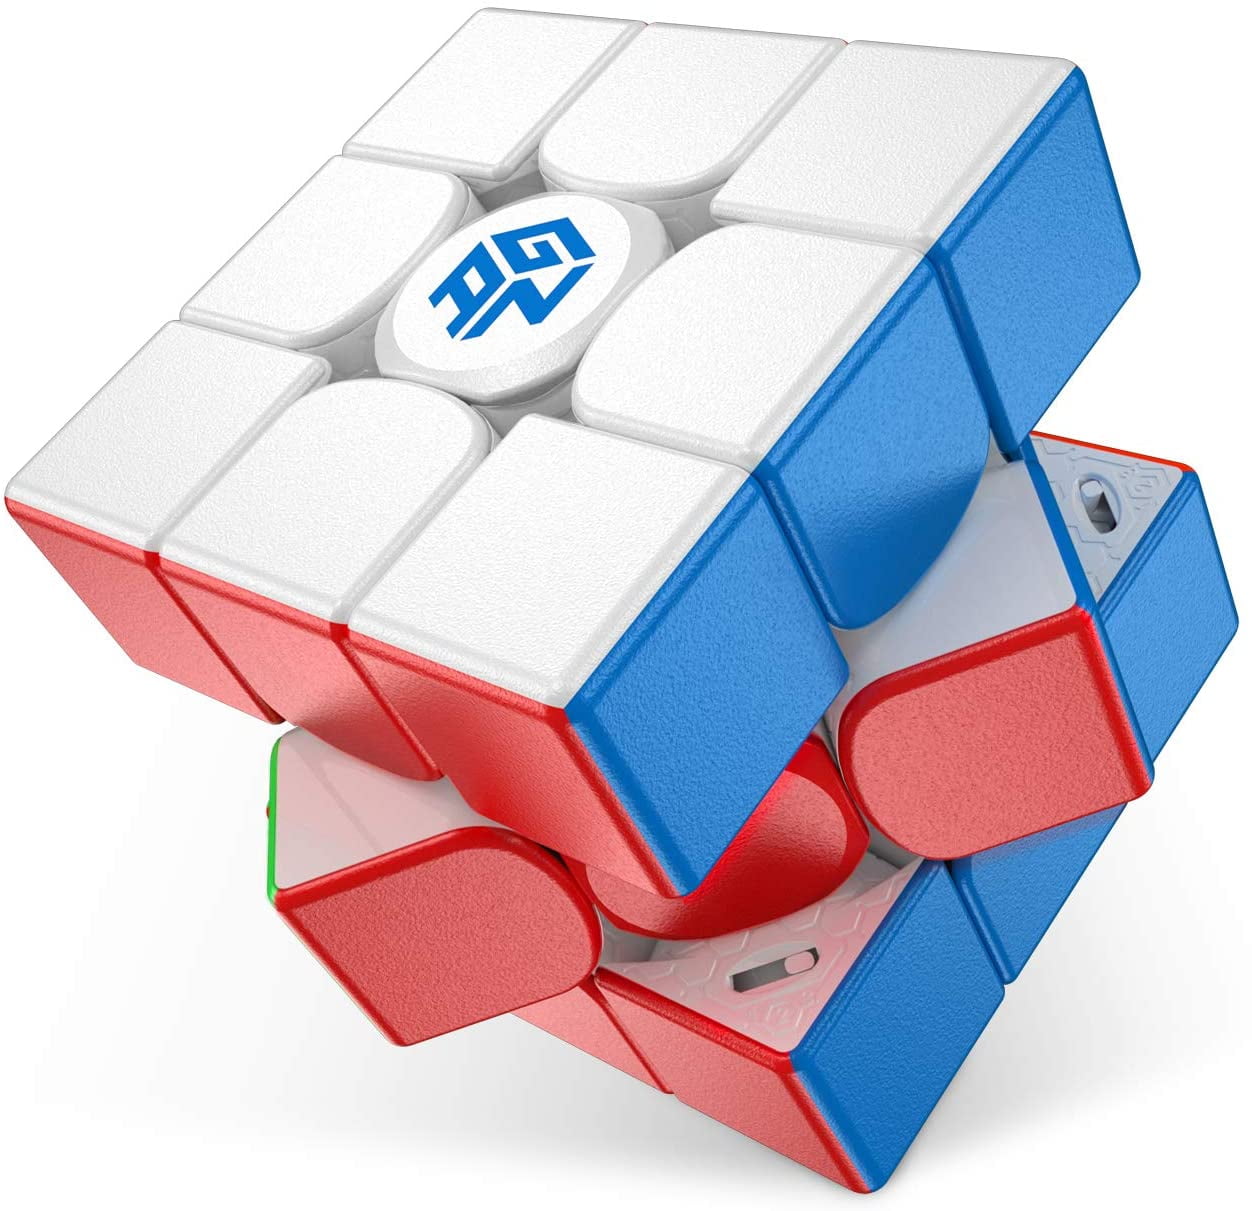 Mf8 Noir 12 Côté teraminx 3-couches Megaminx Magic Cube Twist Puzzle Jouet 